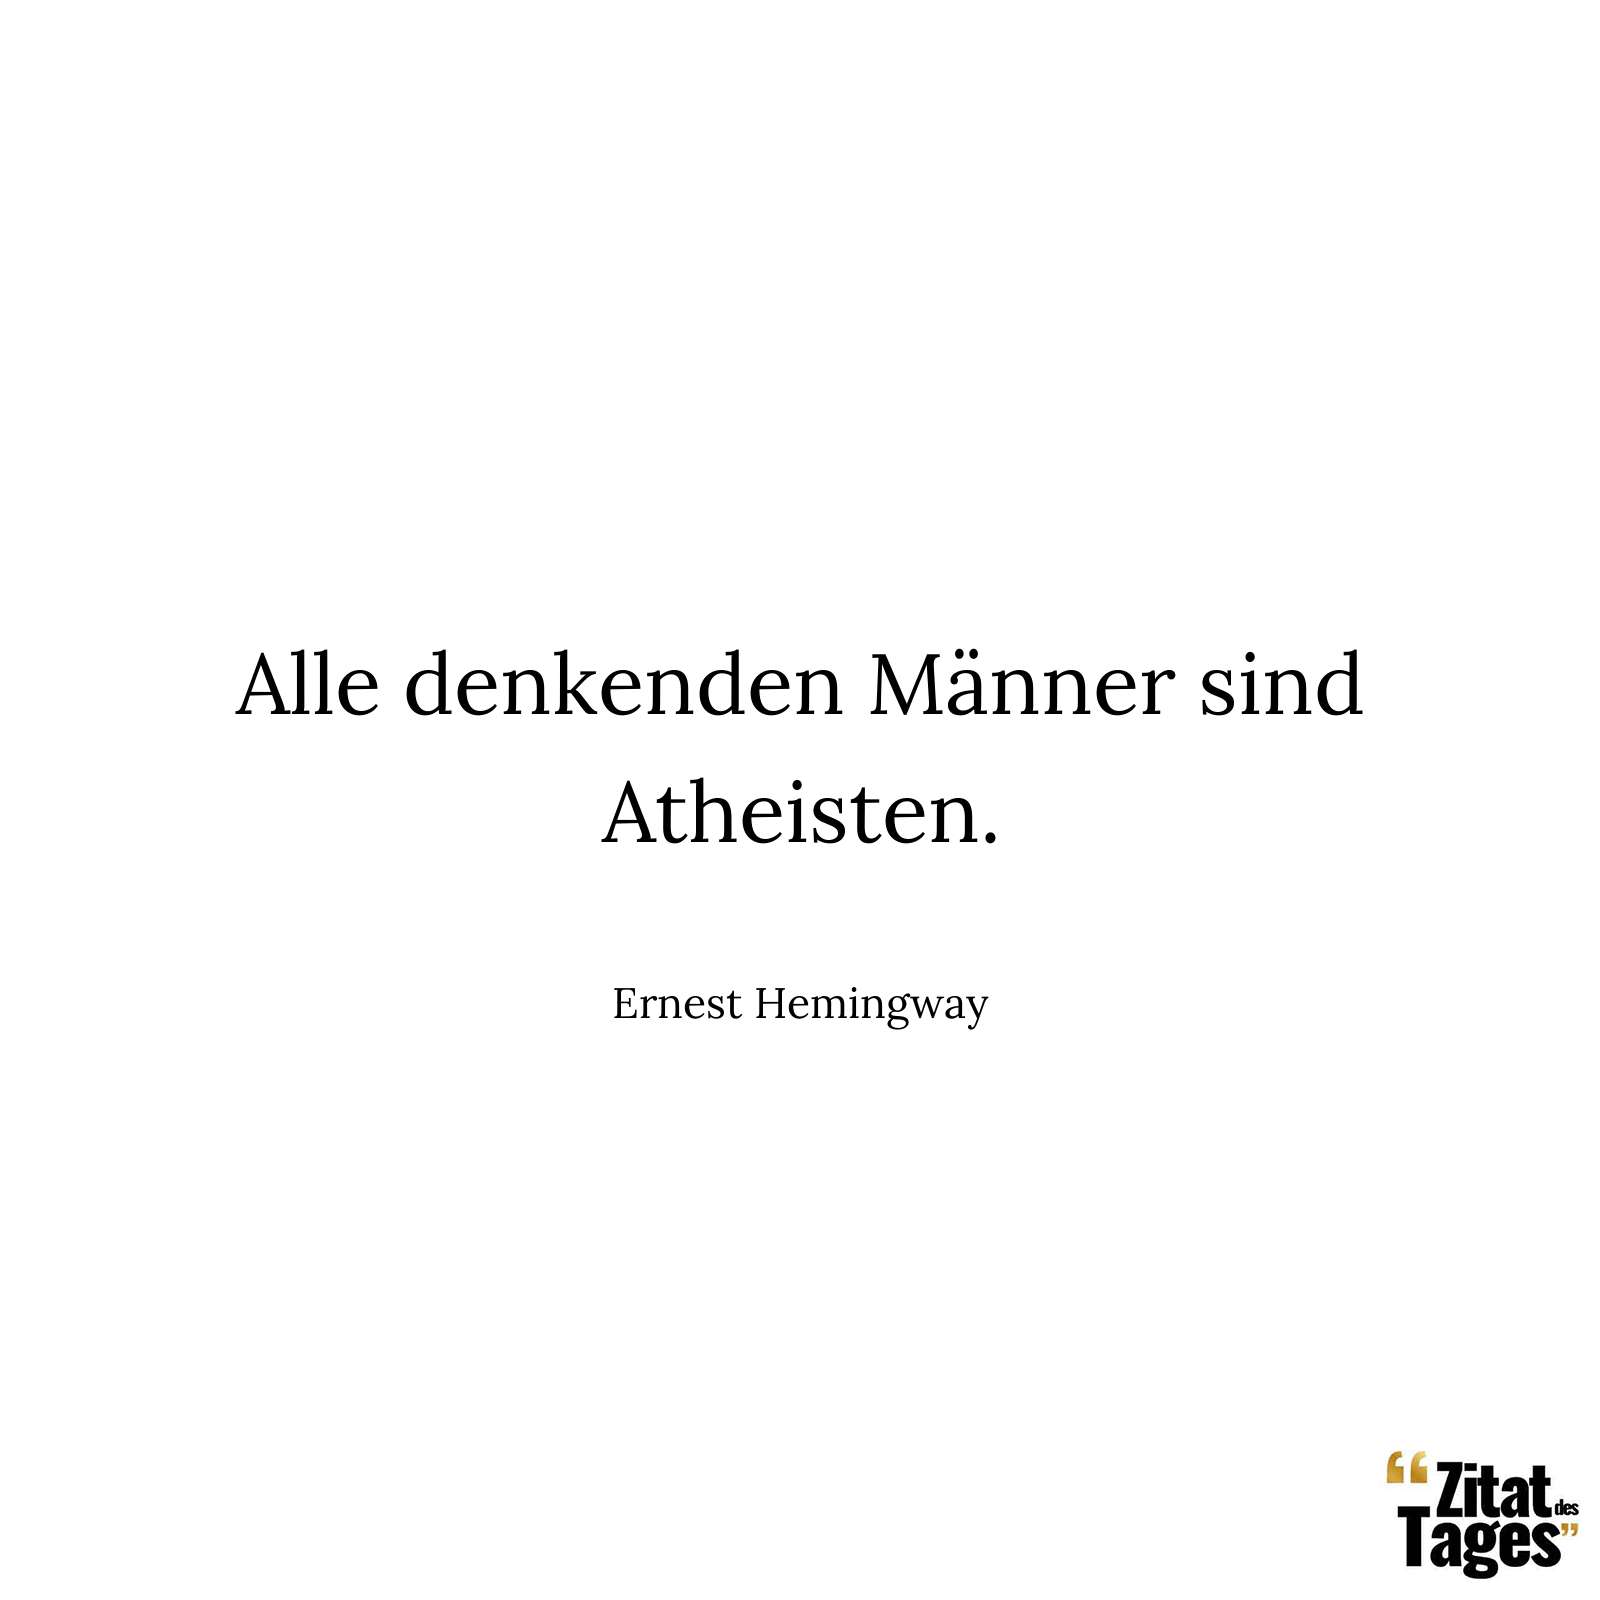 Alle denkenden Männer sind Atheisten. - Ernest Hemingway